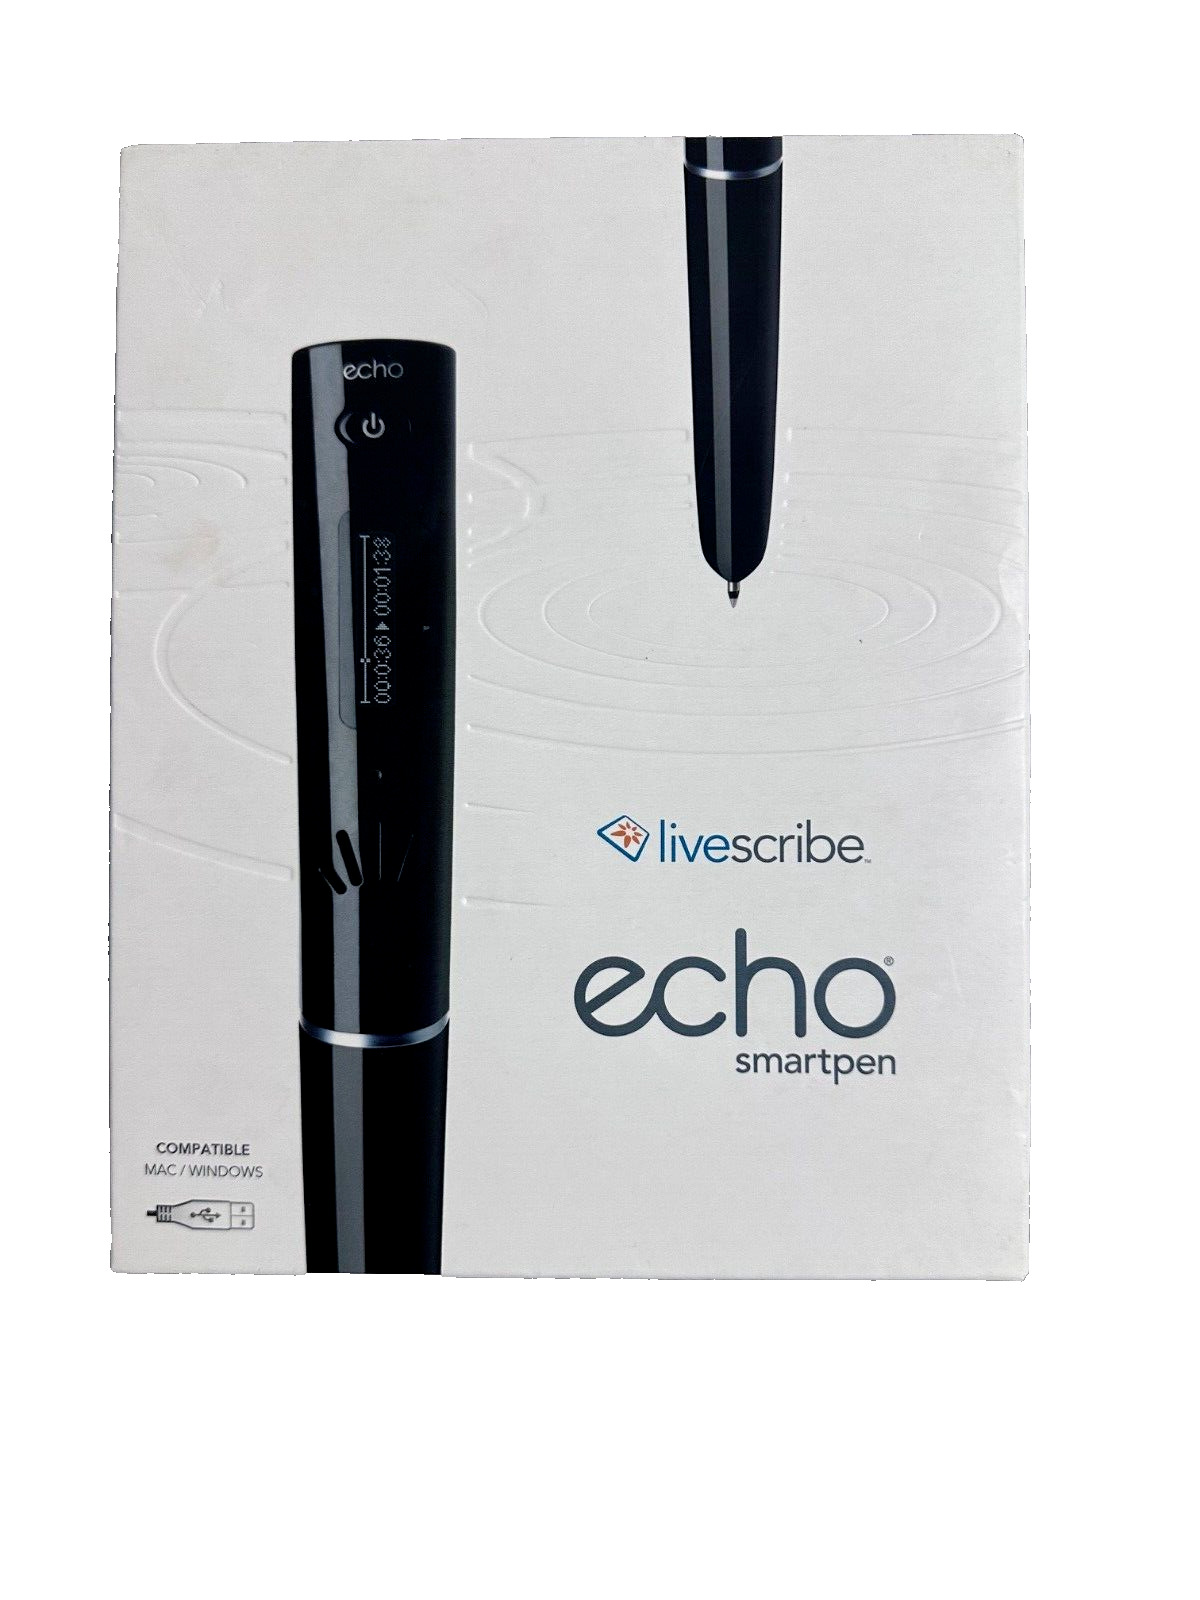 Livescribe Echo Smartpen 2GB Black APX-00008 - BRAND NEW SEALED